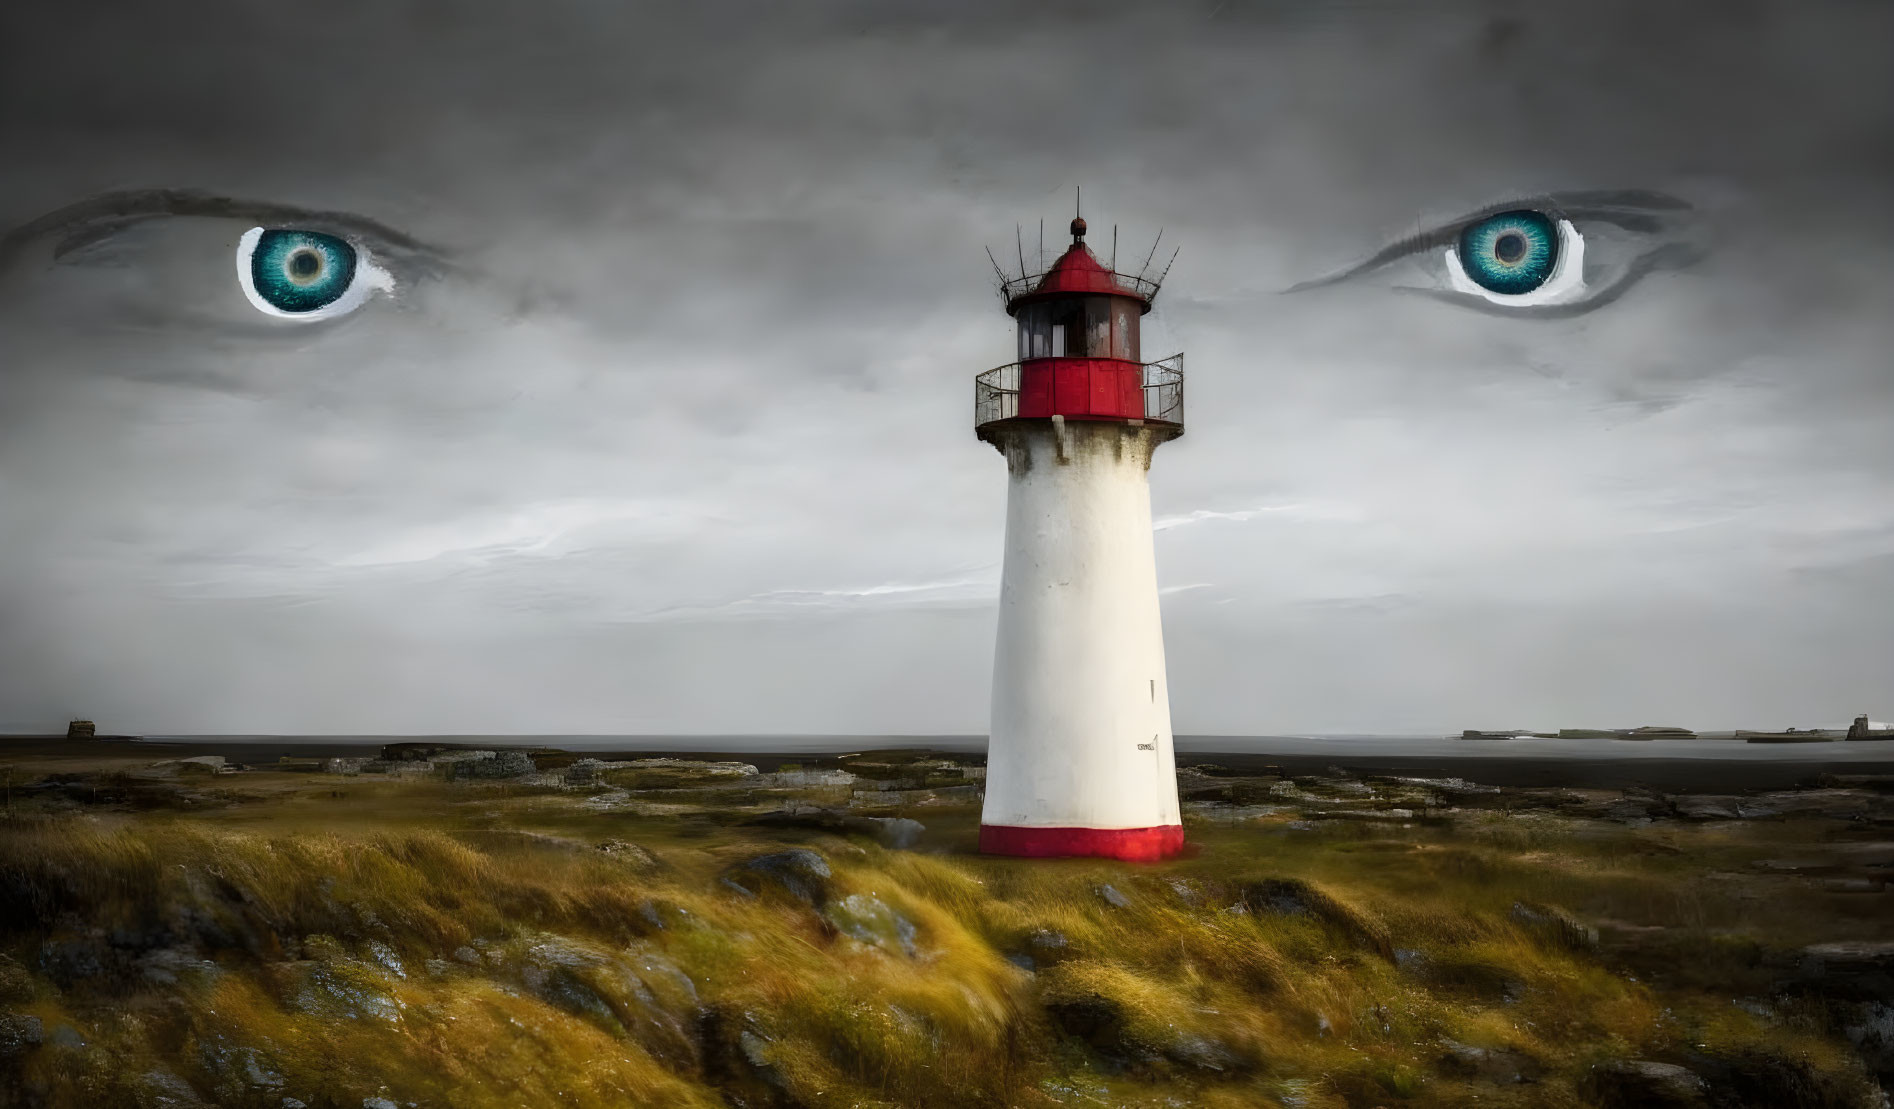 The Breton lighthouse under God's gaze